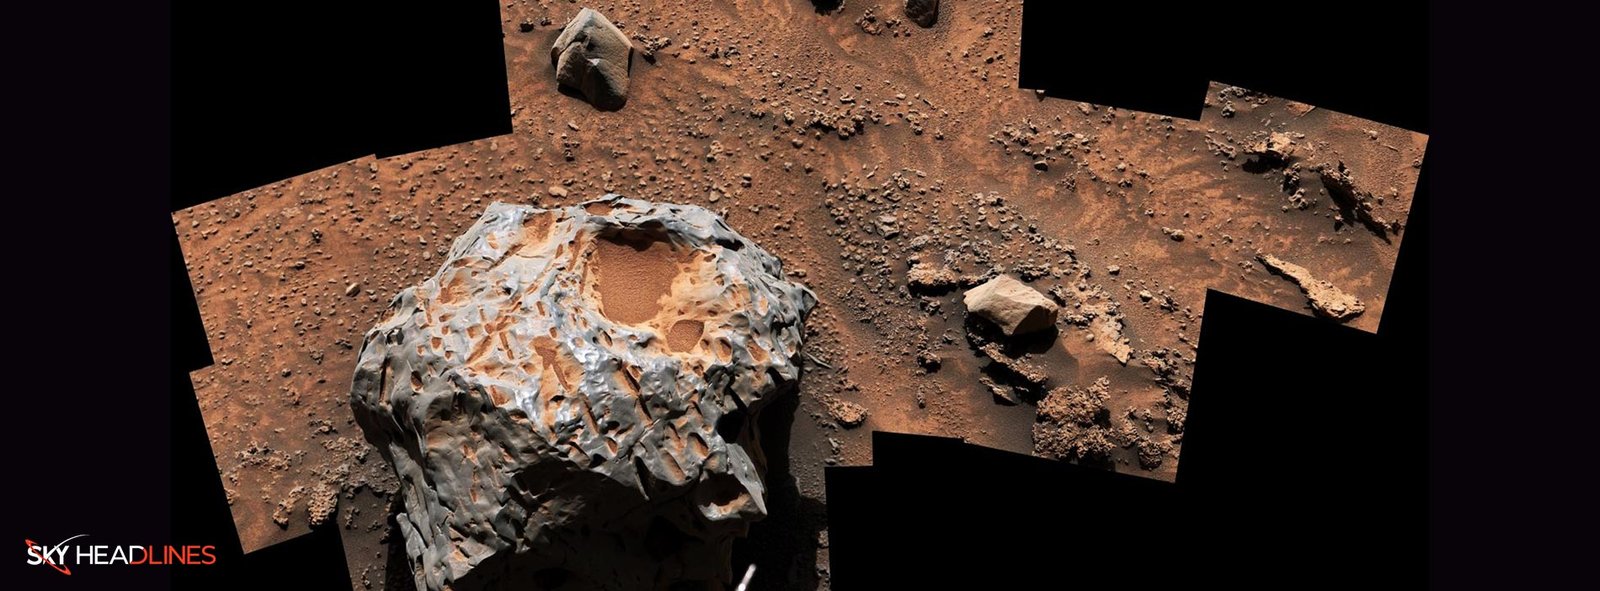 metallic meteorite on Mars